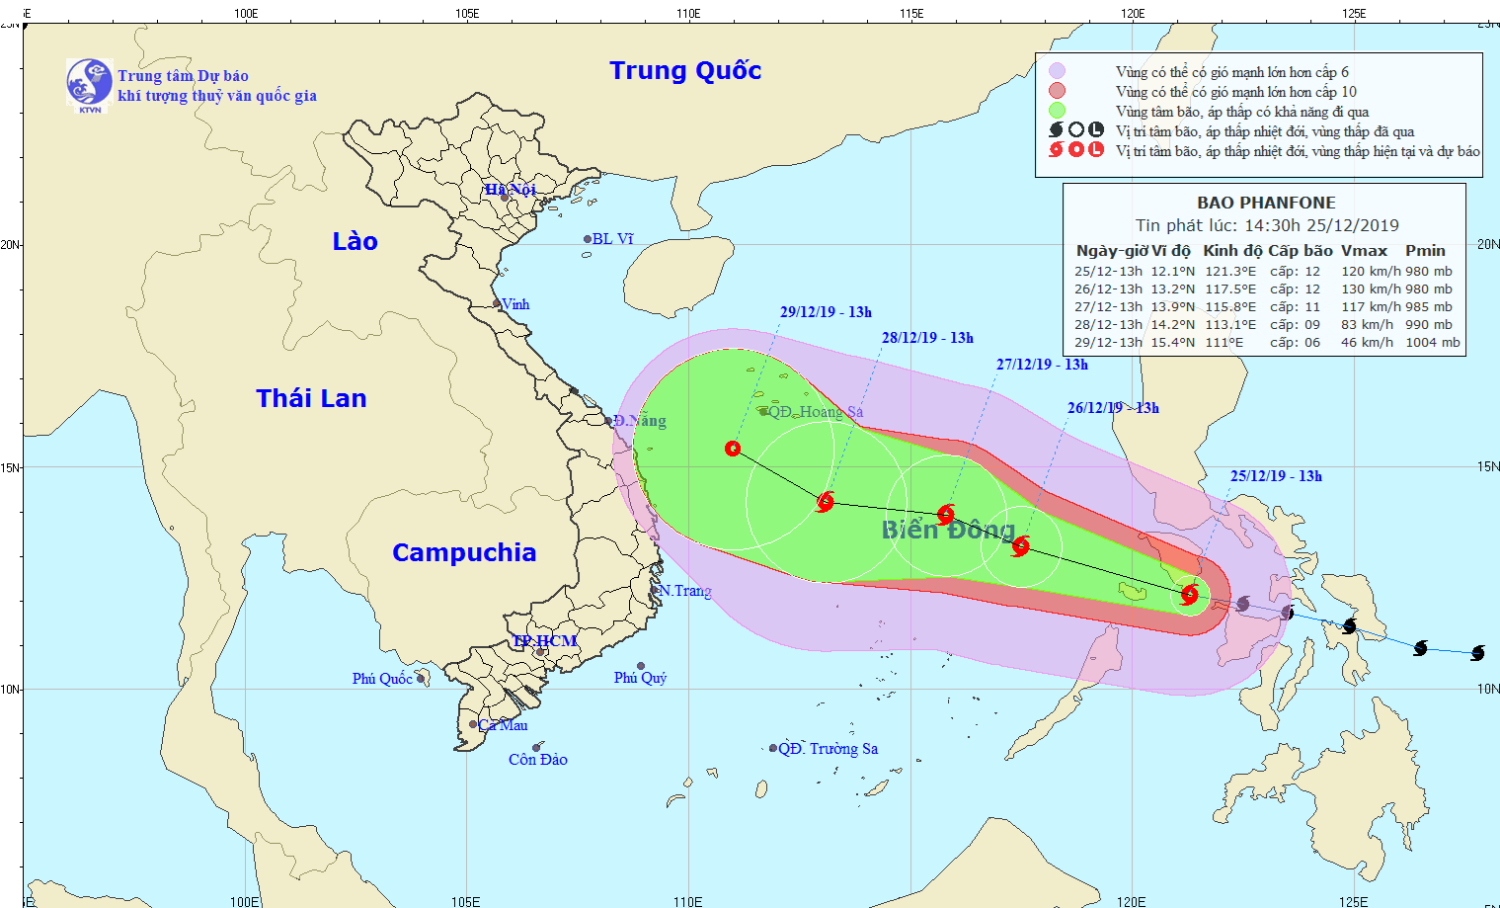 Tin bão gần Biển Đông - bão PHANFONE (14h30 ngày 25/12)